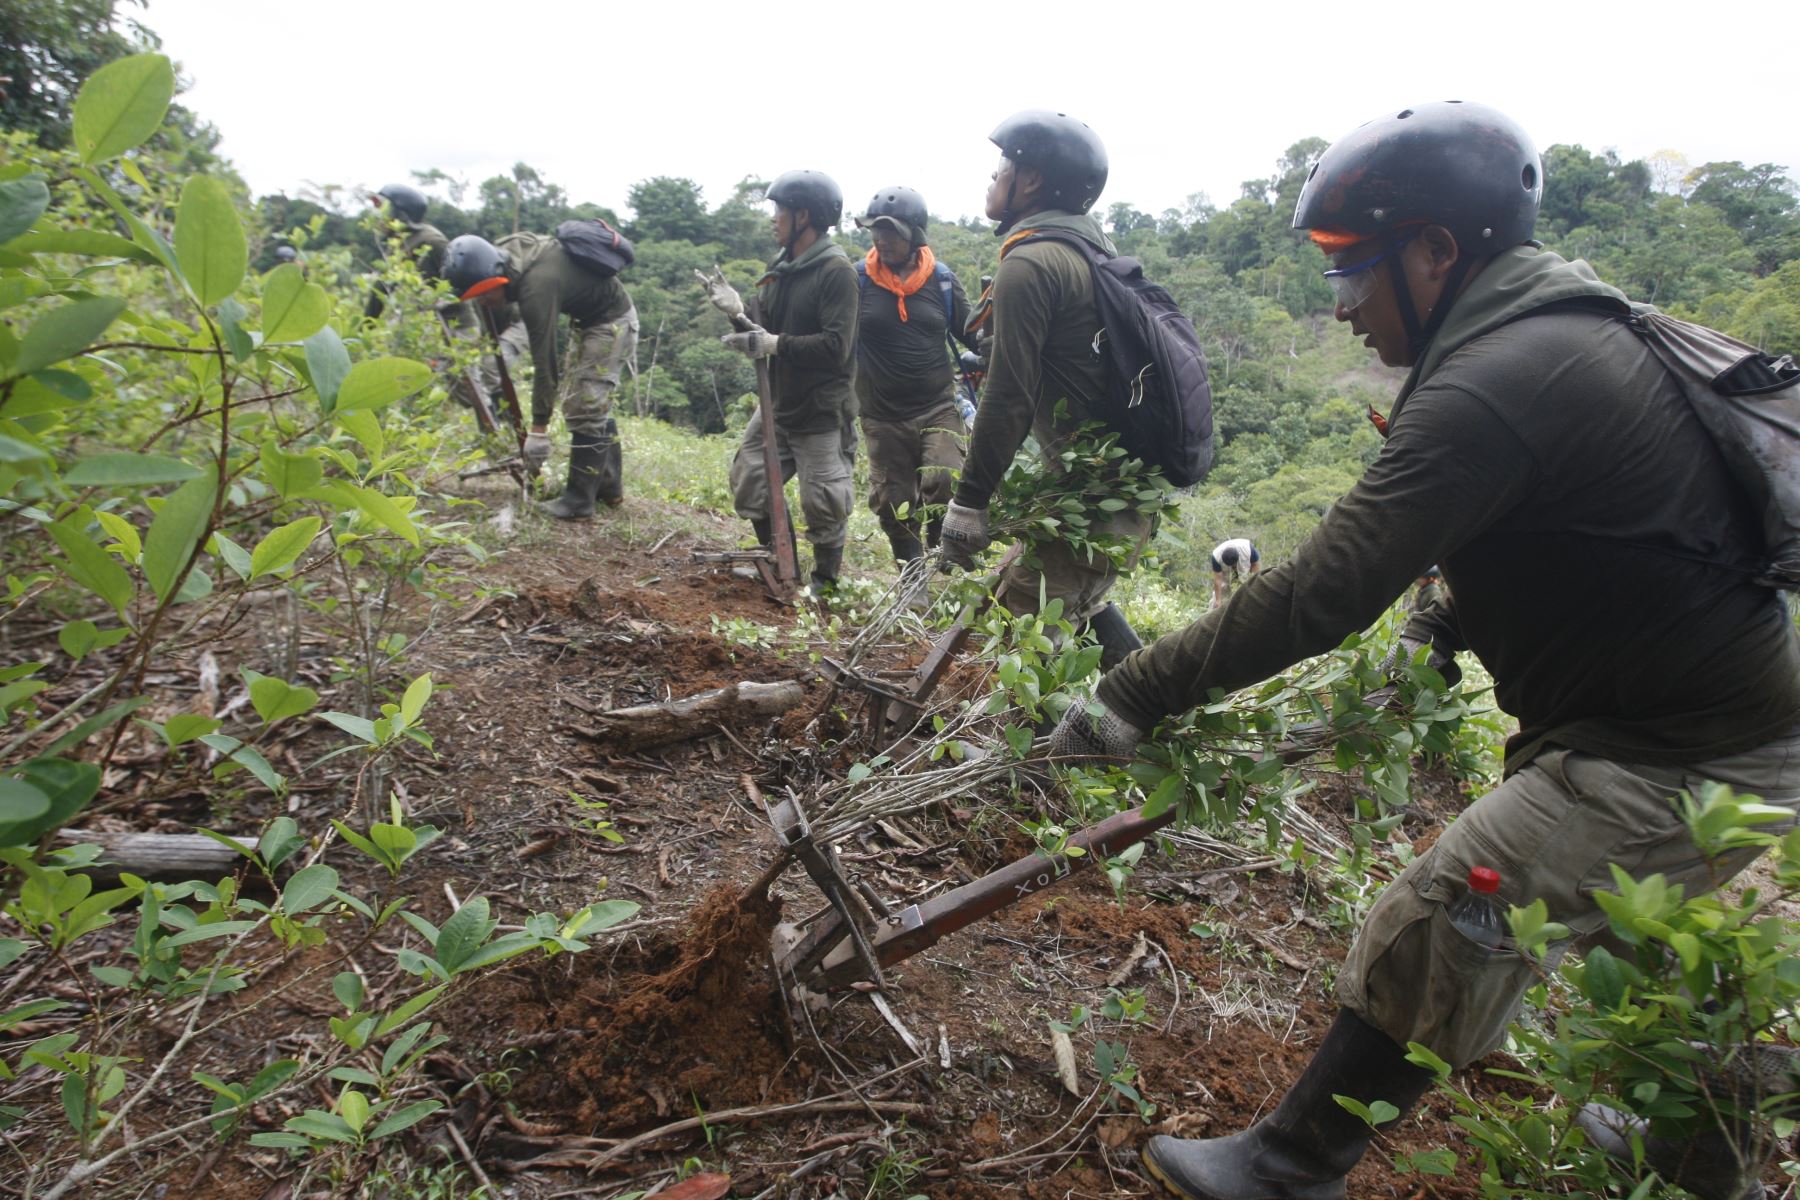 Corah suma 17,285 hectáreas de coca erradicadas en el Alto Huallaga. ANDINA/Eddy Ramos